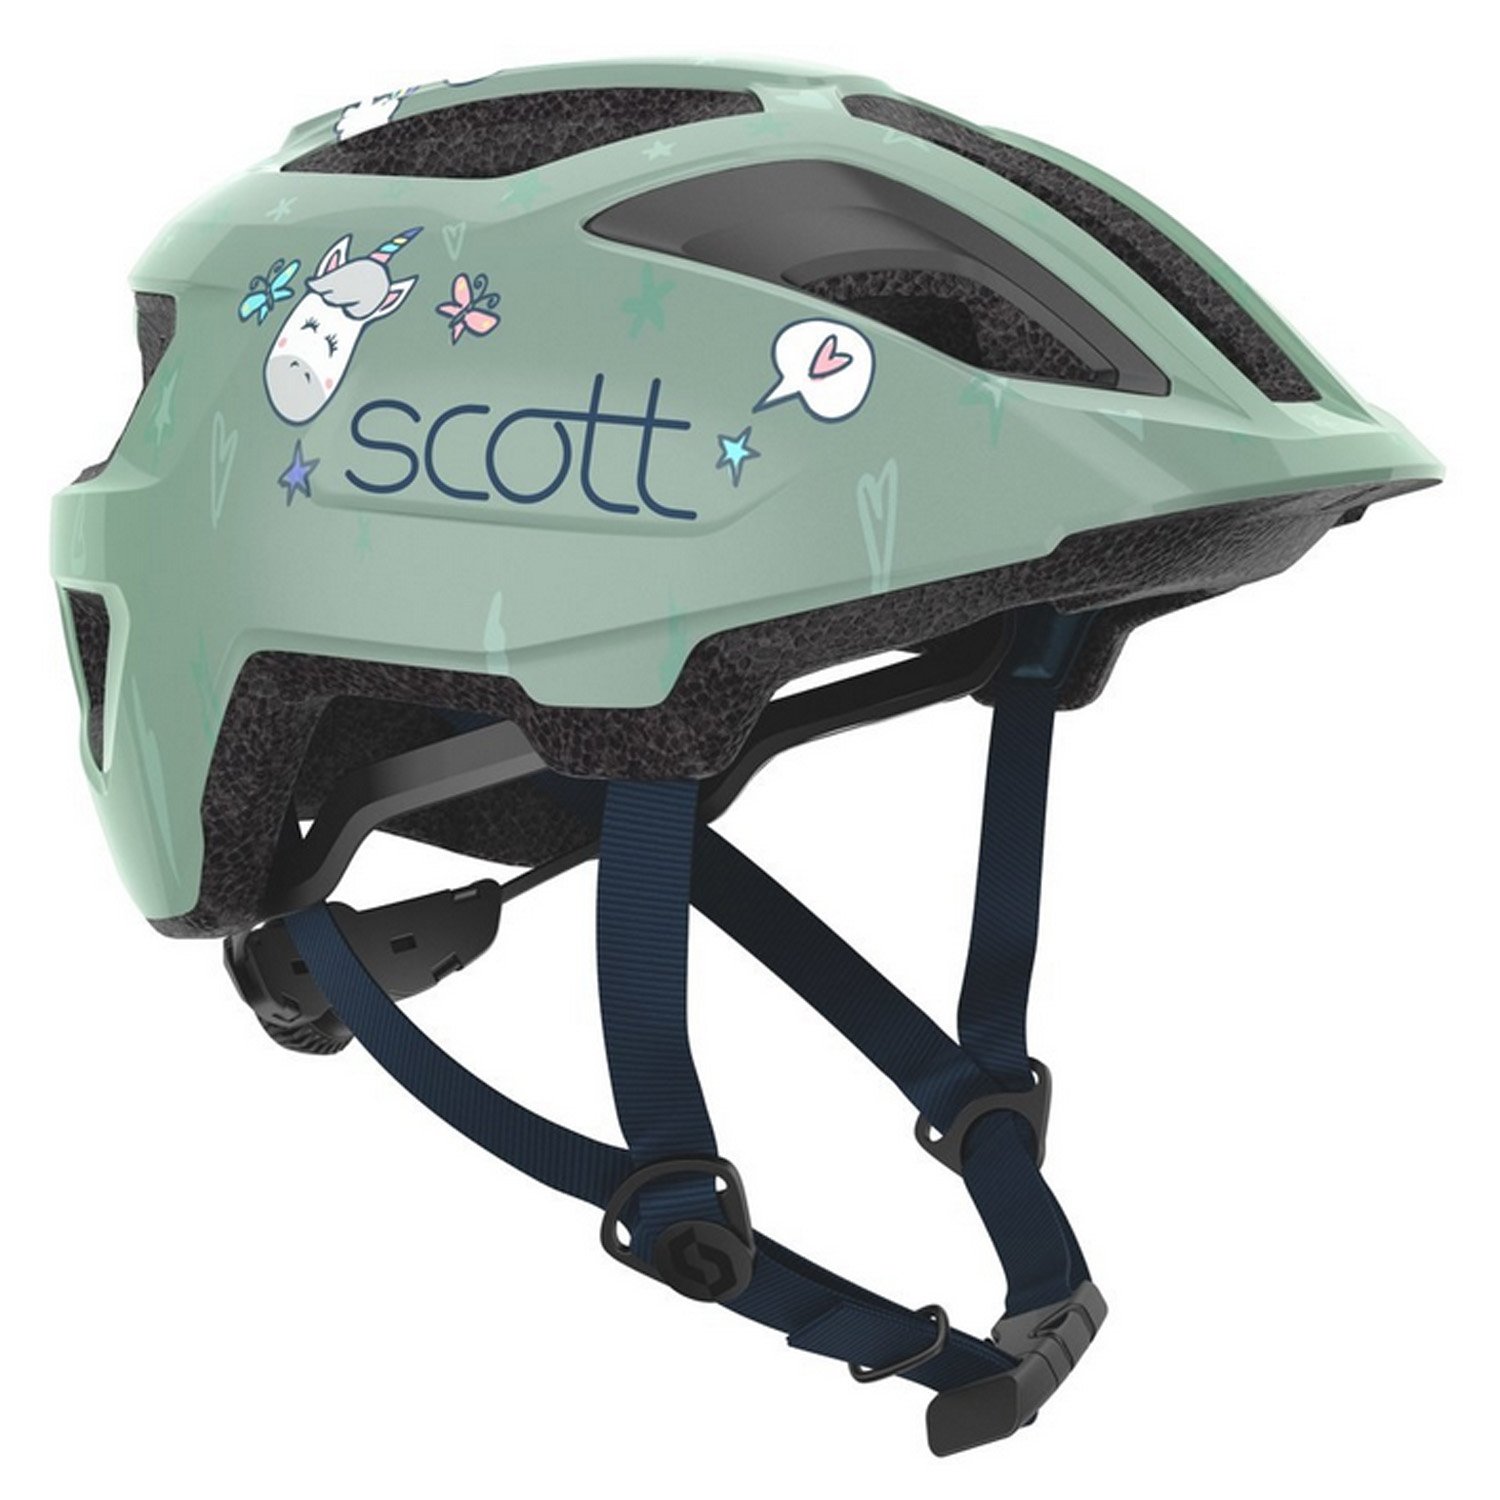 Велошлем SCOTT Kid Spunto (CE), soft green, ES275235-5487 крылья велосипедные hog yfp 37 20 24 с интегрированным задним габаритным фонарем пластик черные hog 37